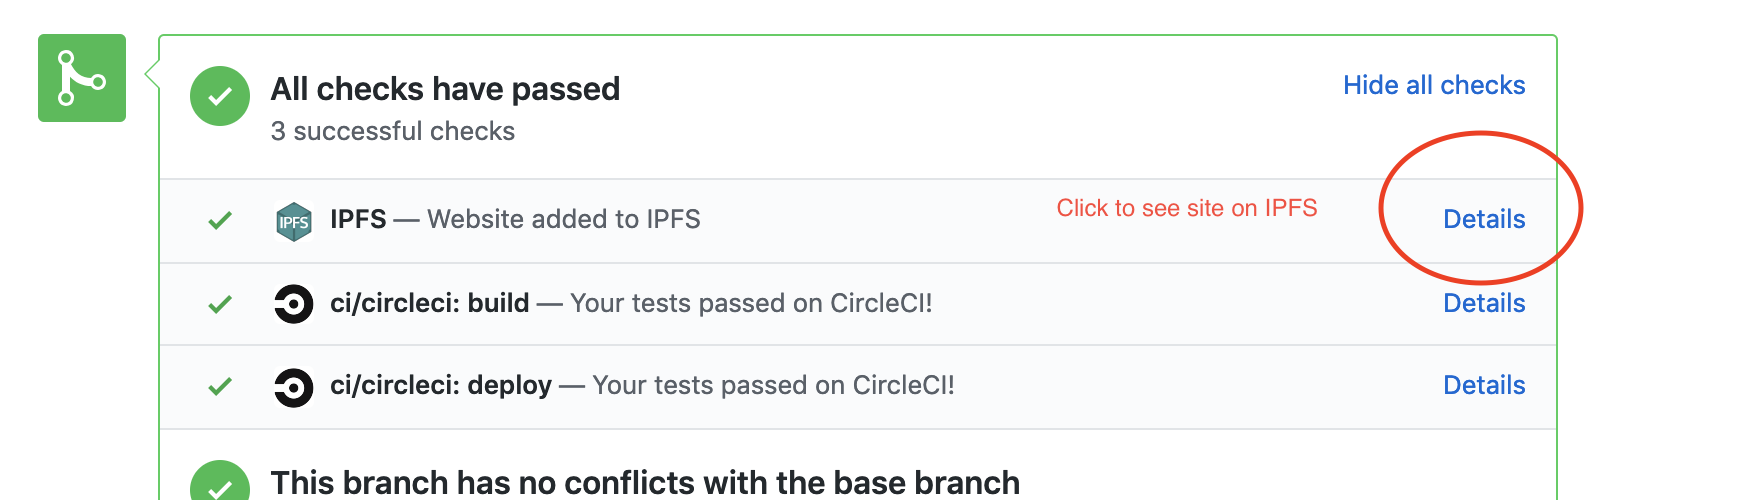 IPFS preview link screenshot